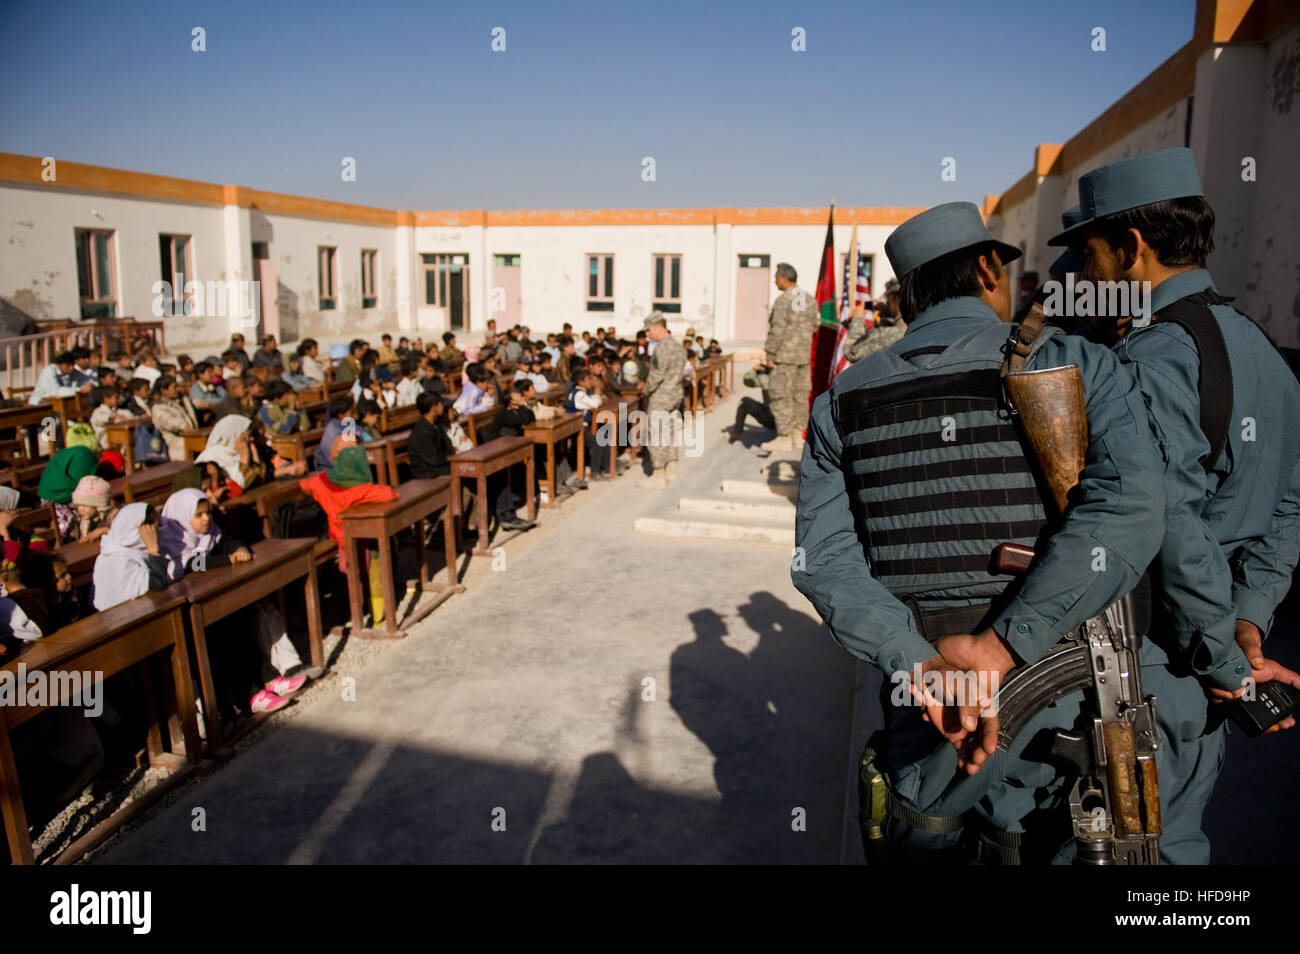 Afghanische nationale Polizisten ansehen, wie eine lokale Koalition-Führer für Kinder an einer Grundschule in der Nähe von Kandahar Flugplatz spricht. Afghanischen und Koalition Führer sprach mit den Kindern über die Bedeutung von Bildung und gutes Benehmen vor Aushändigung Schulmaterial. Afghanische Polizei geben Schulmaterial, Kandahar Kinder 344796 Stockfoto